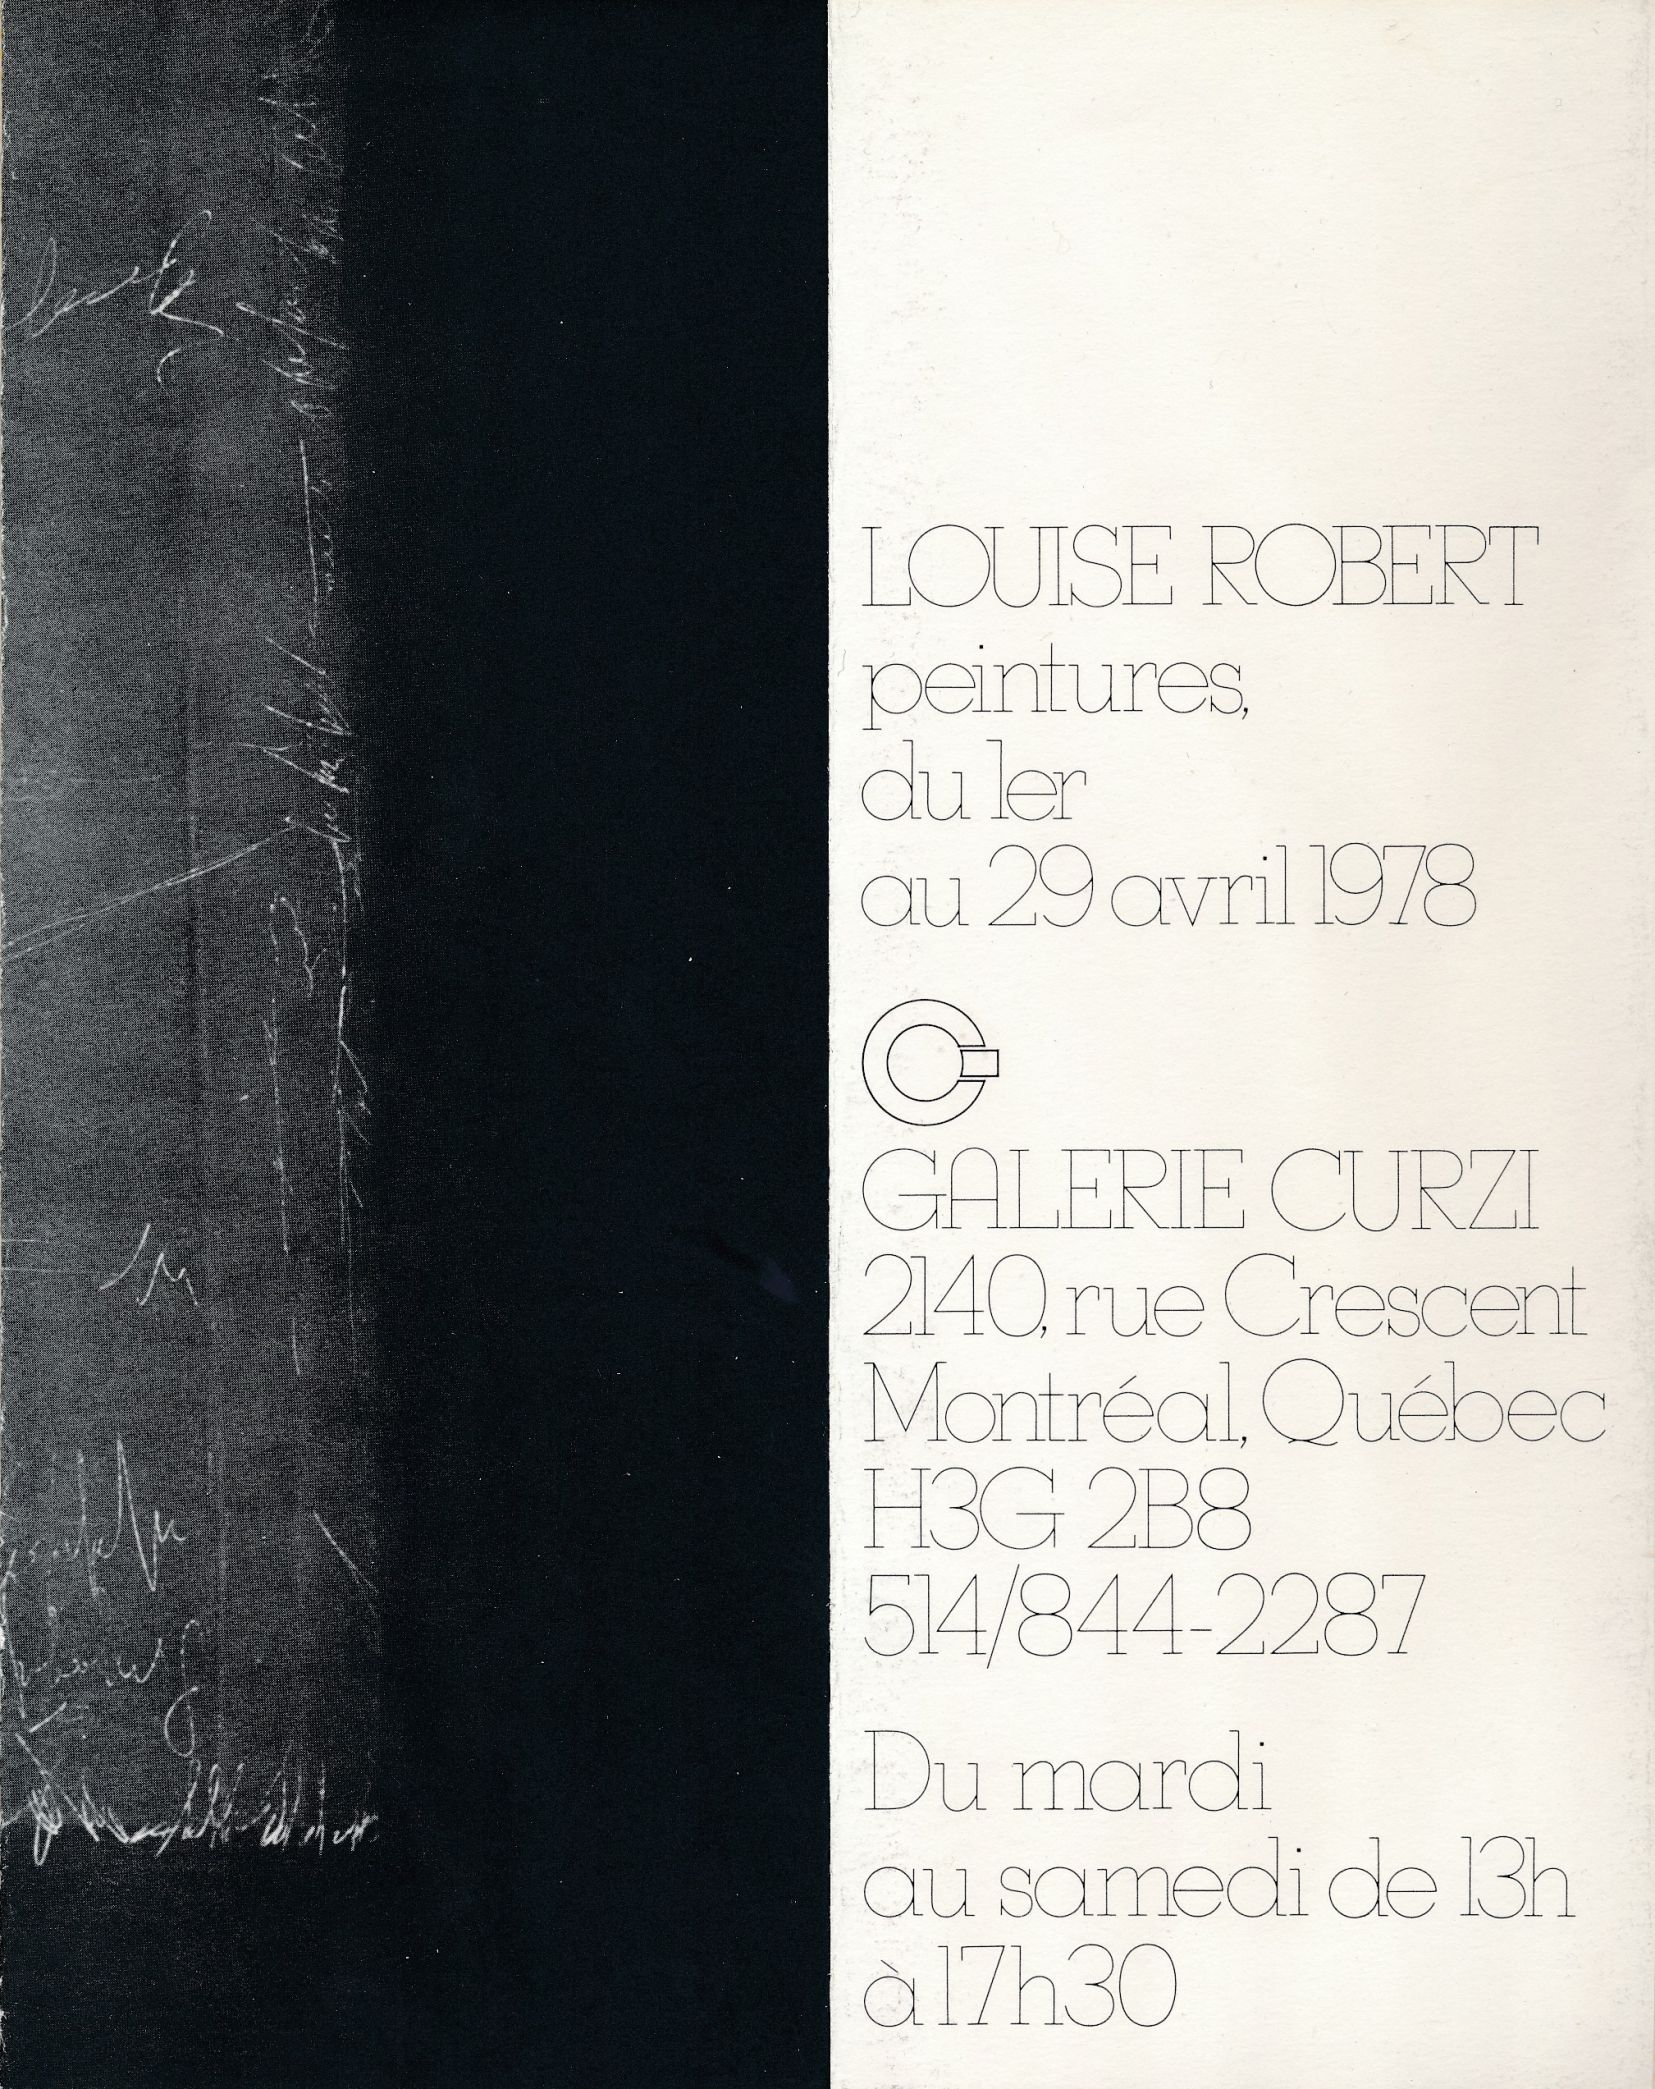 Carton d’invitation de l’exposition Louise Robert. Peintures, Galerie Curzi, Montréal, 1978.